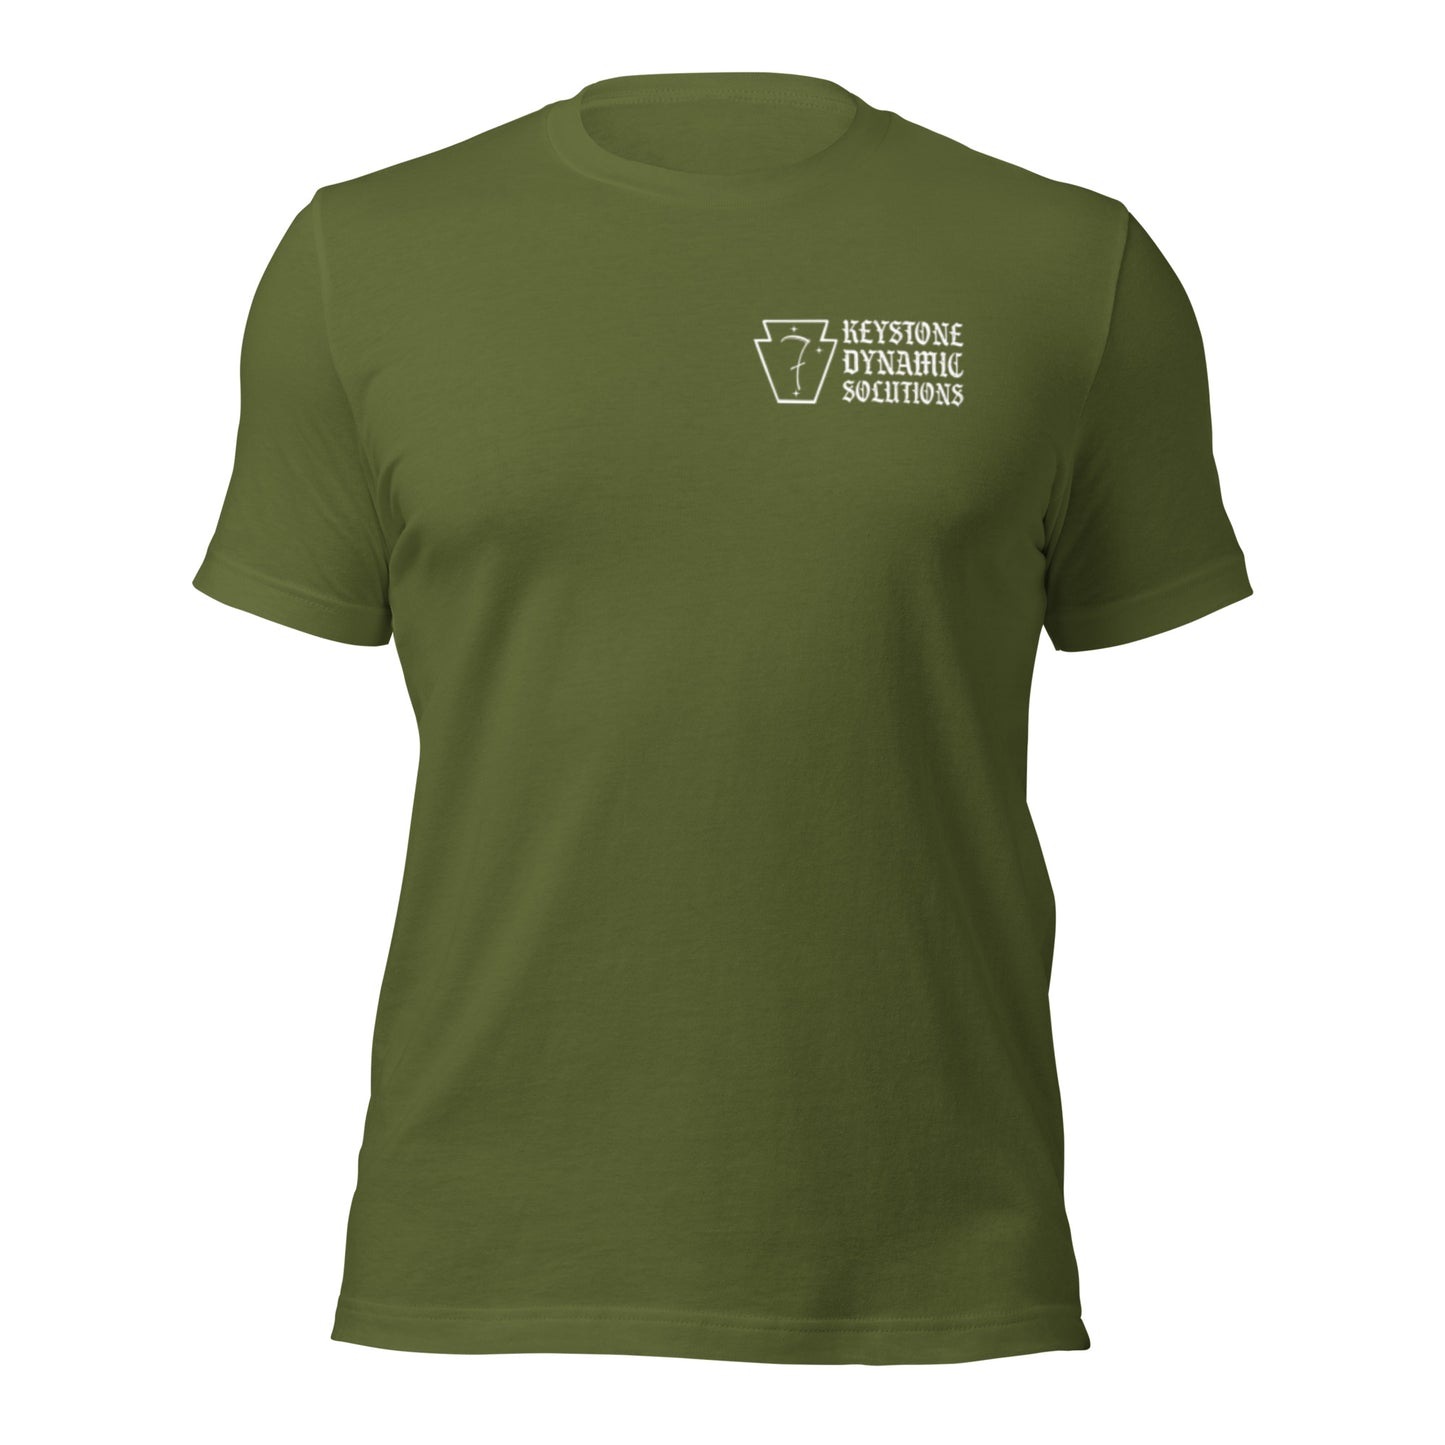 Three Rivers Minimalist shirt- Light logo